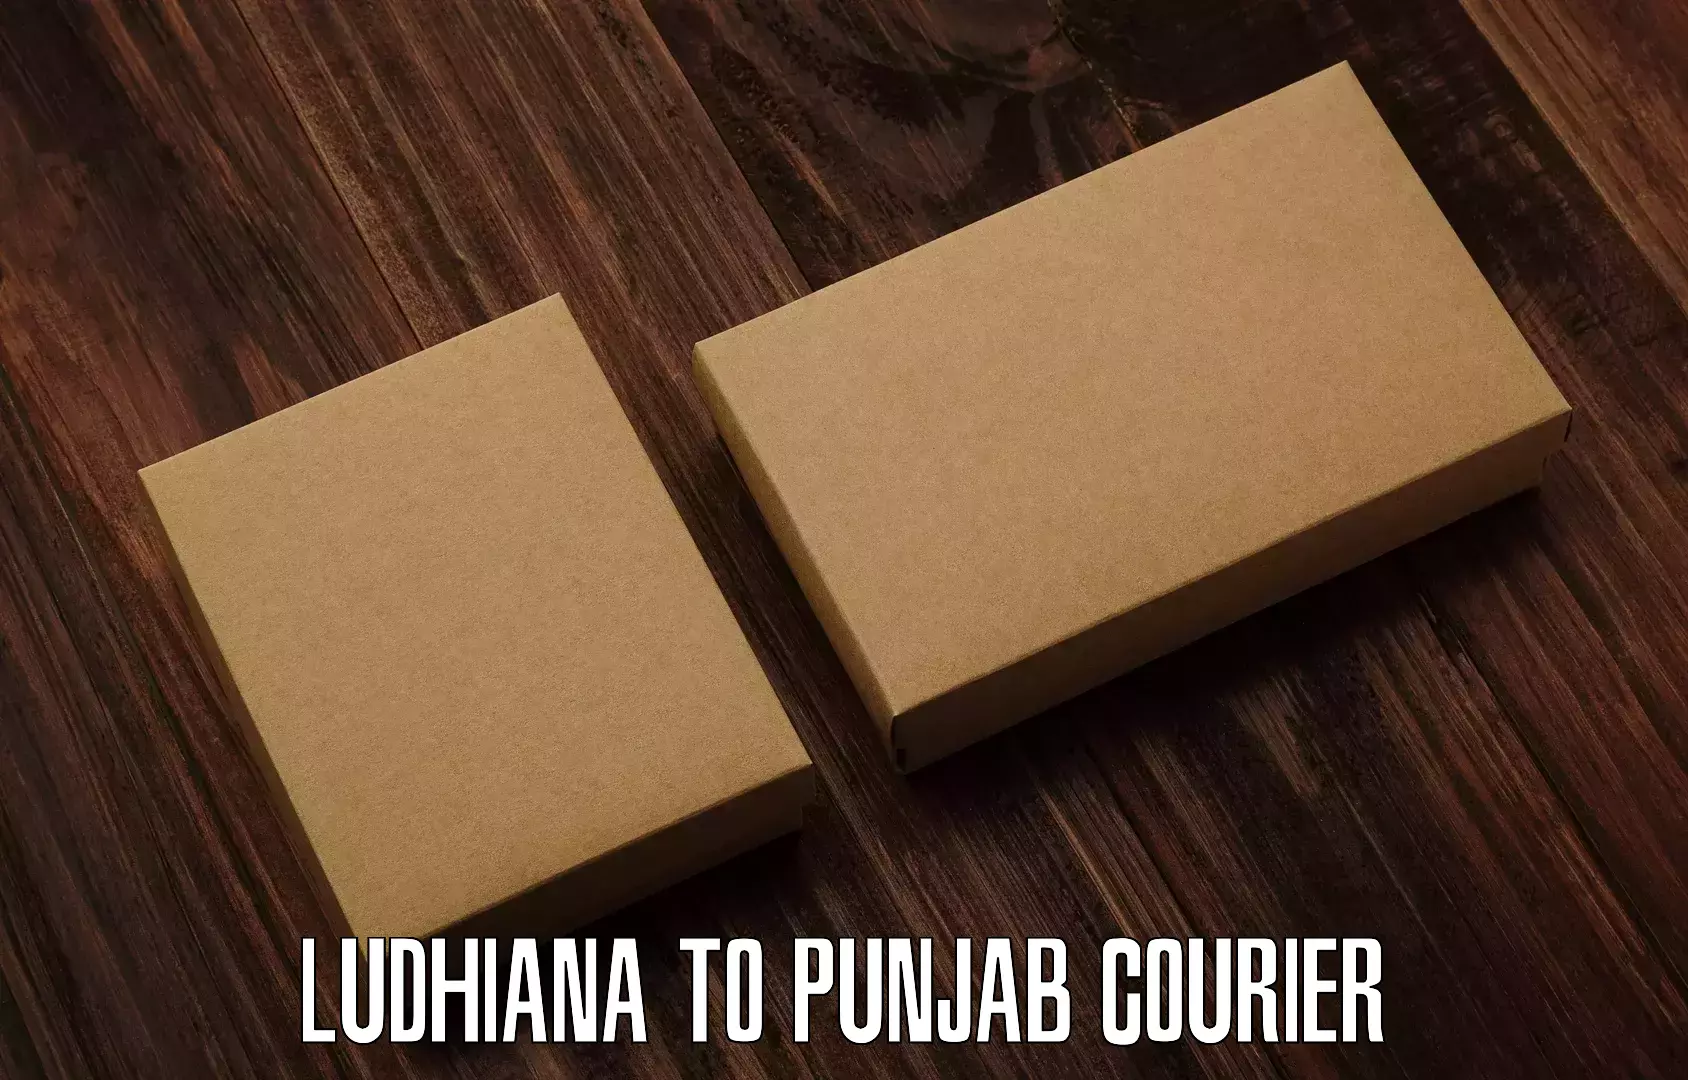 Courier service comparison Ludhiana to Dera Bassi